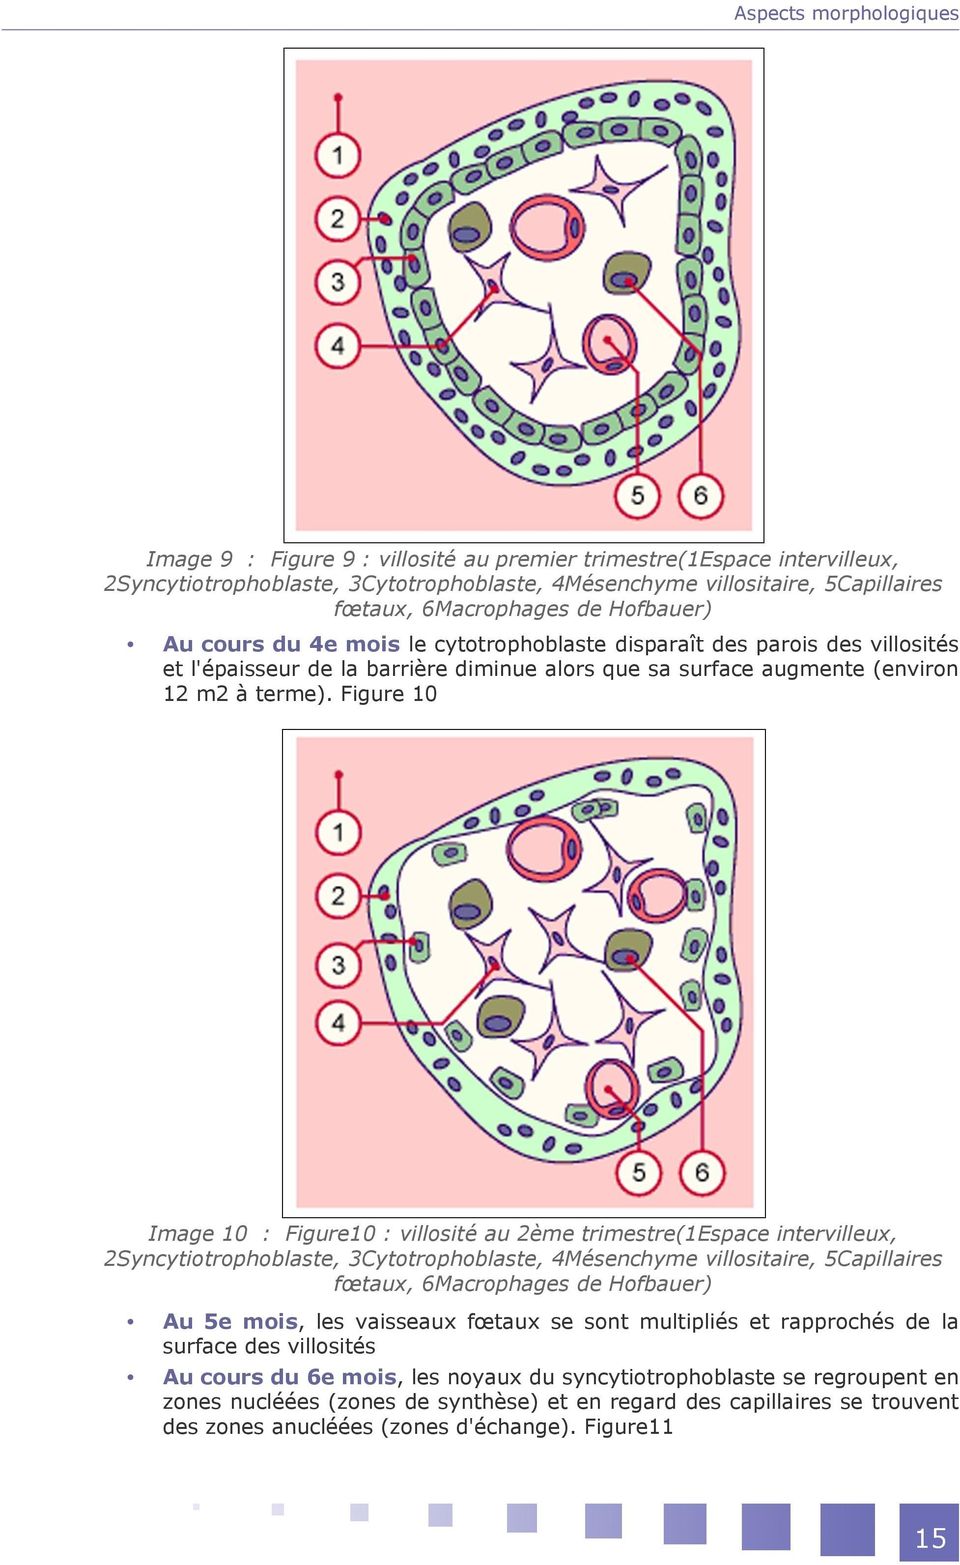 Figure 10 Image 10 : Figure10 : villosité au 2ème trimestre(1espace intervilleux, 2Syncytiotrophoblaste, 3Cytotrophoblaste, 4Mésenchyme villositaire, 5Capillaires fœtaux, 6Macrophages de Hofbauer) Au